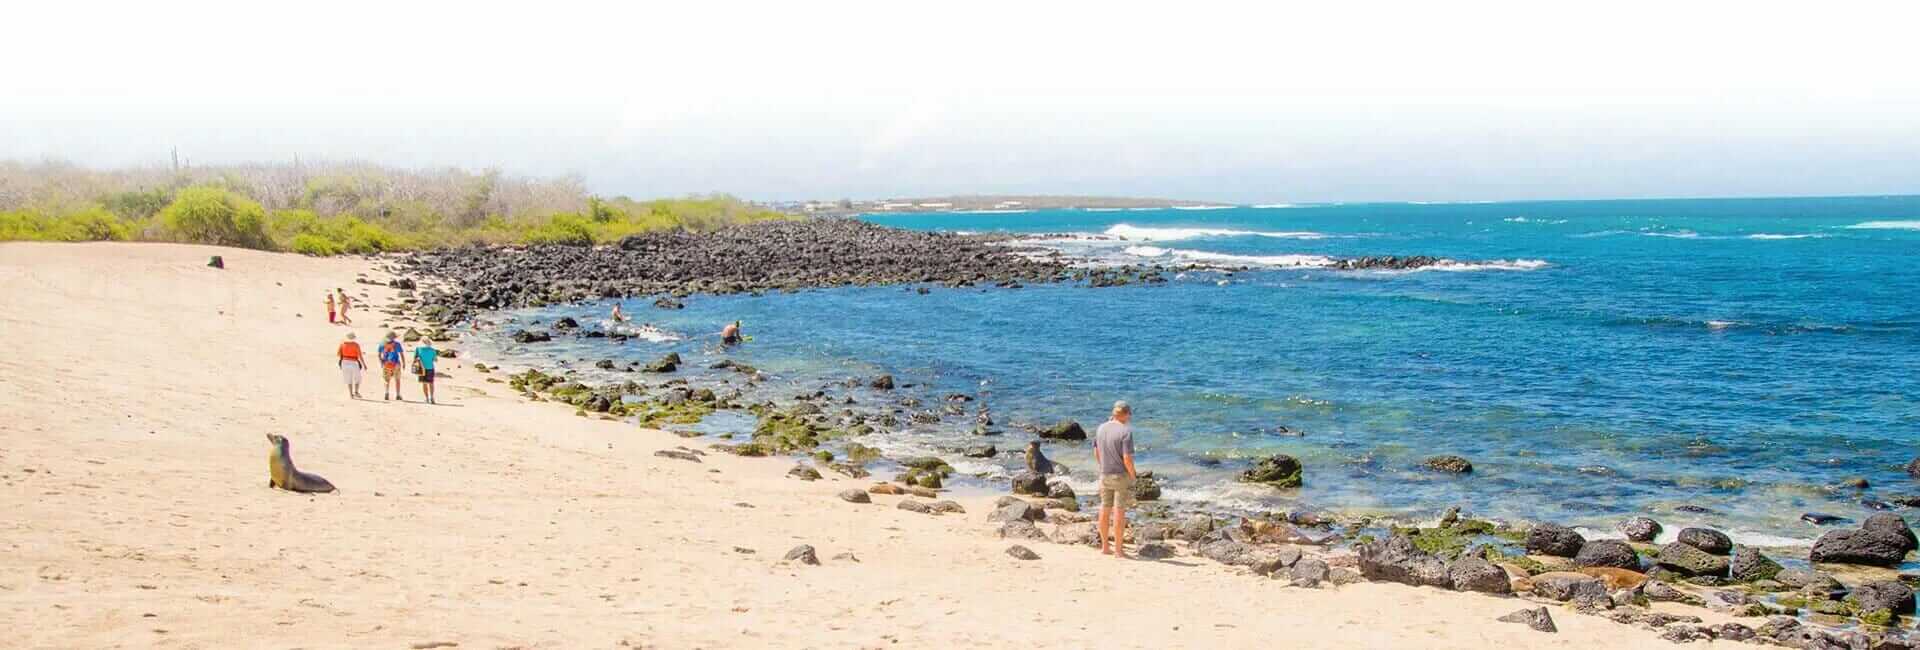 islas galápagos playa dorada